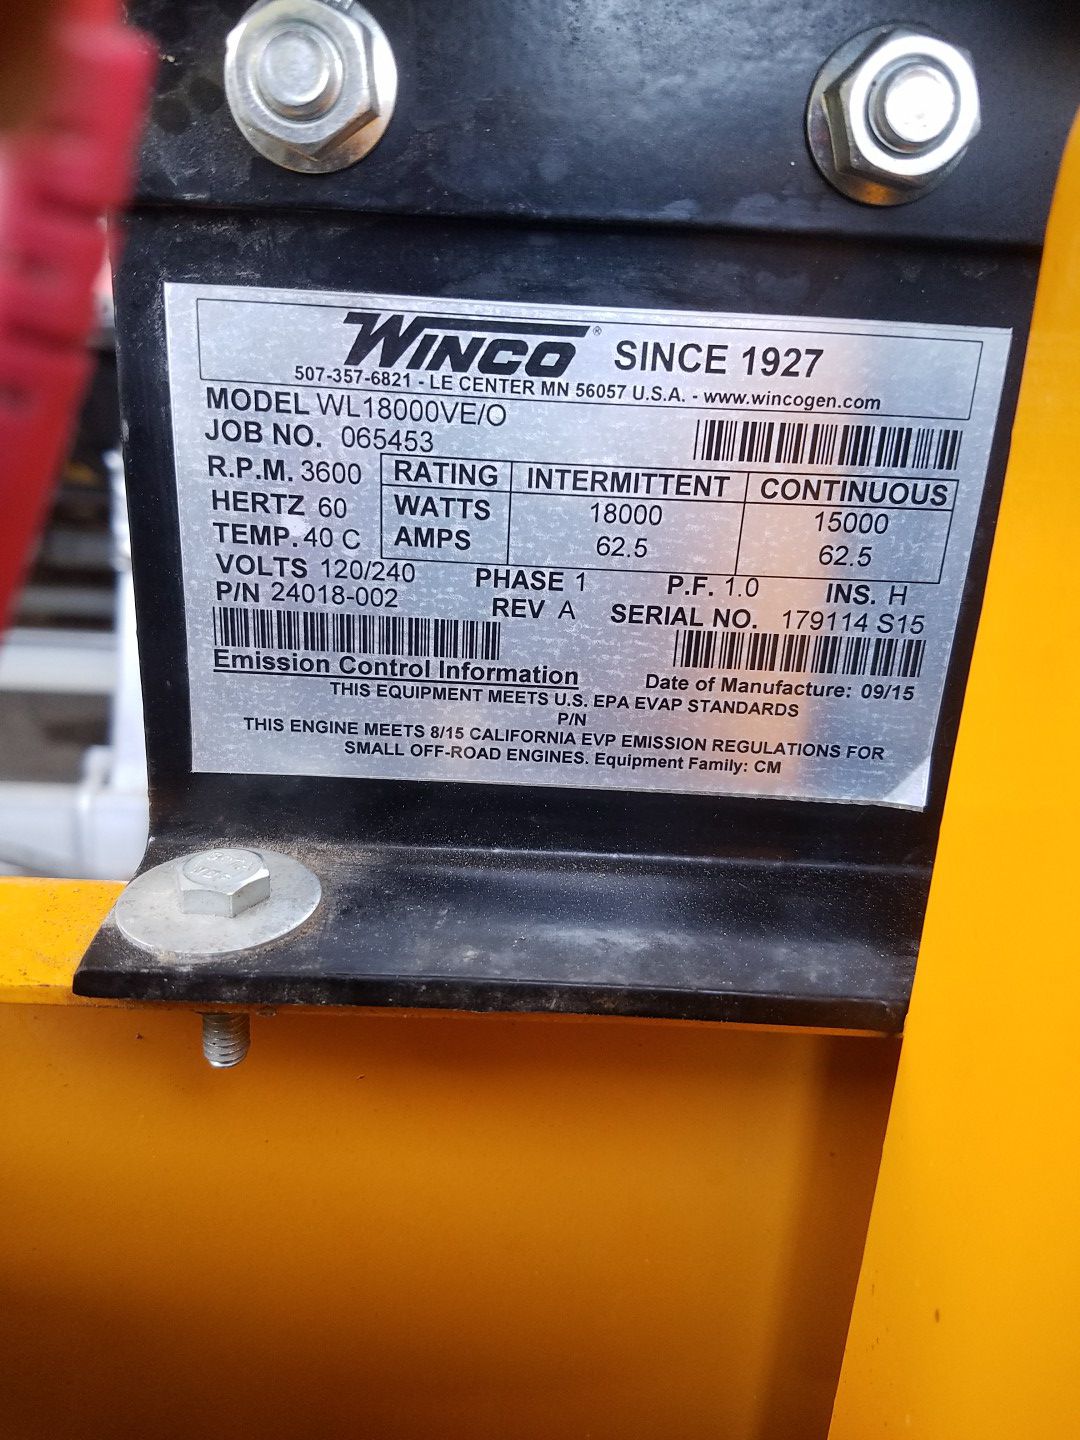 Miller weldmaster tpo robot welder and Winco 18000 watt generator